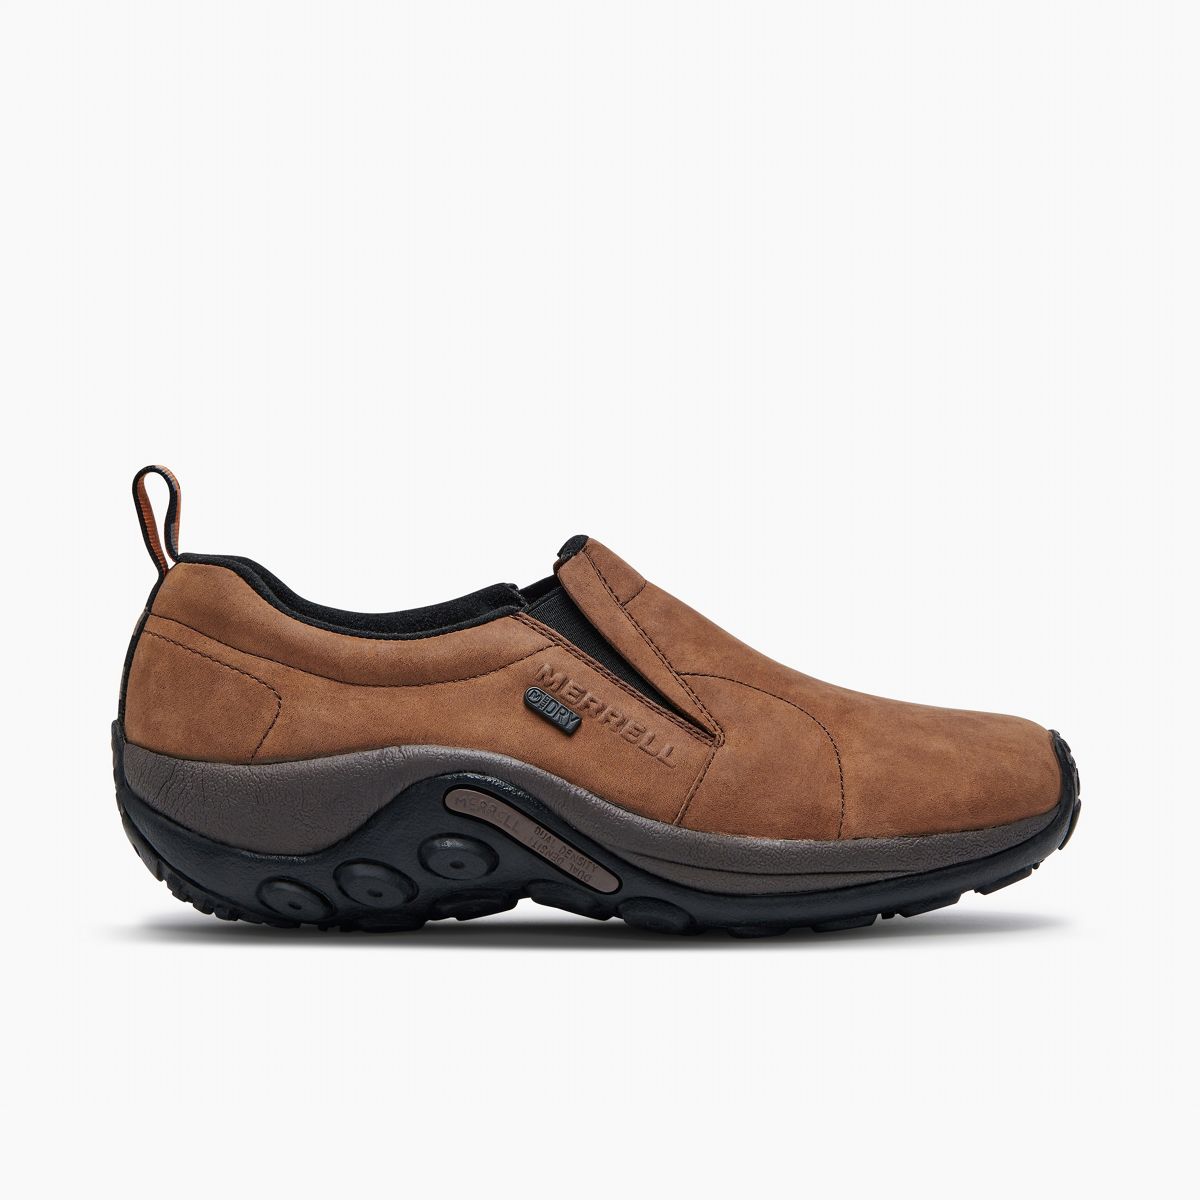 Men's Waterproof Boots & Shoes | Merrell